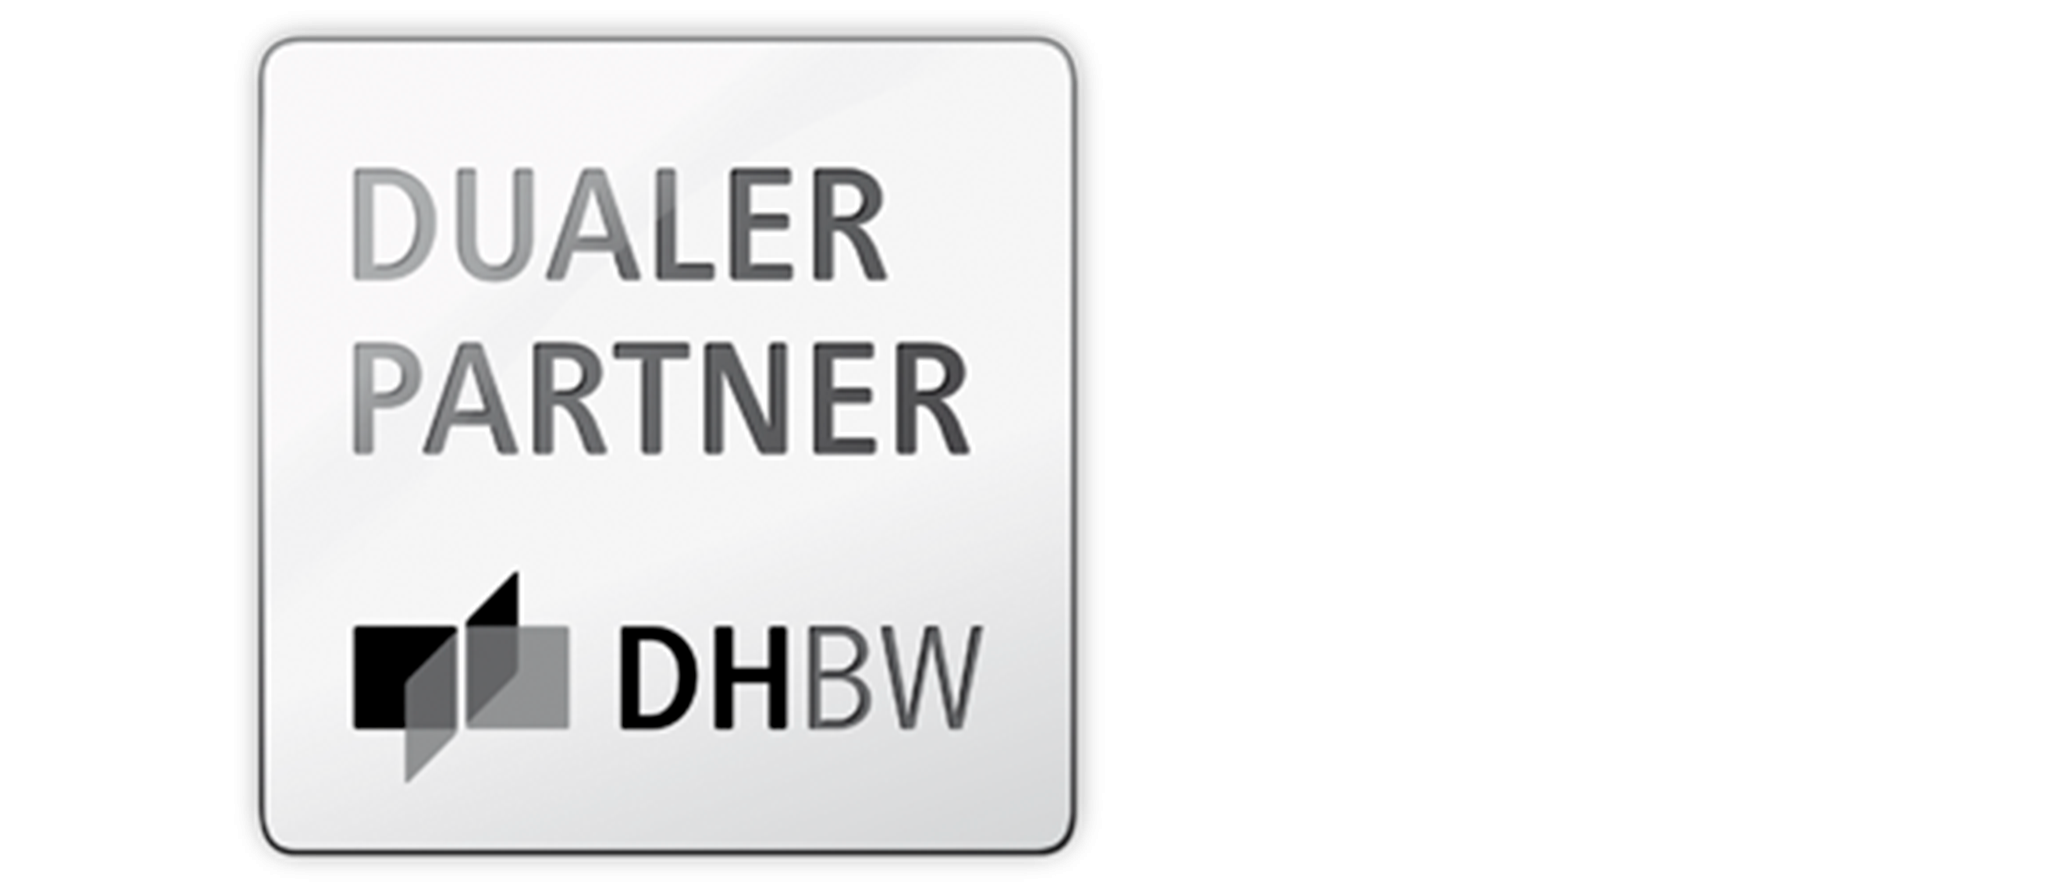 Partner of the DHBW